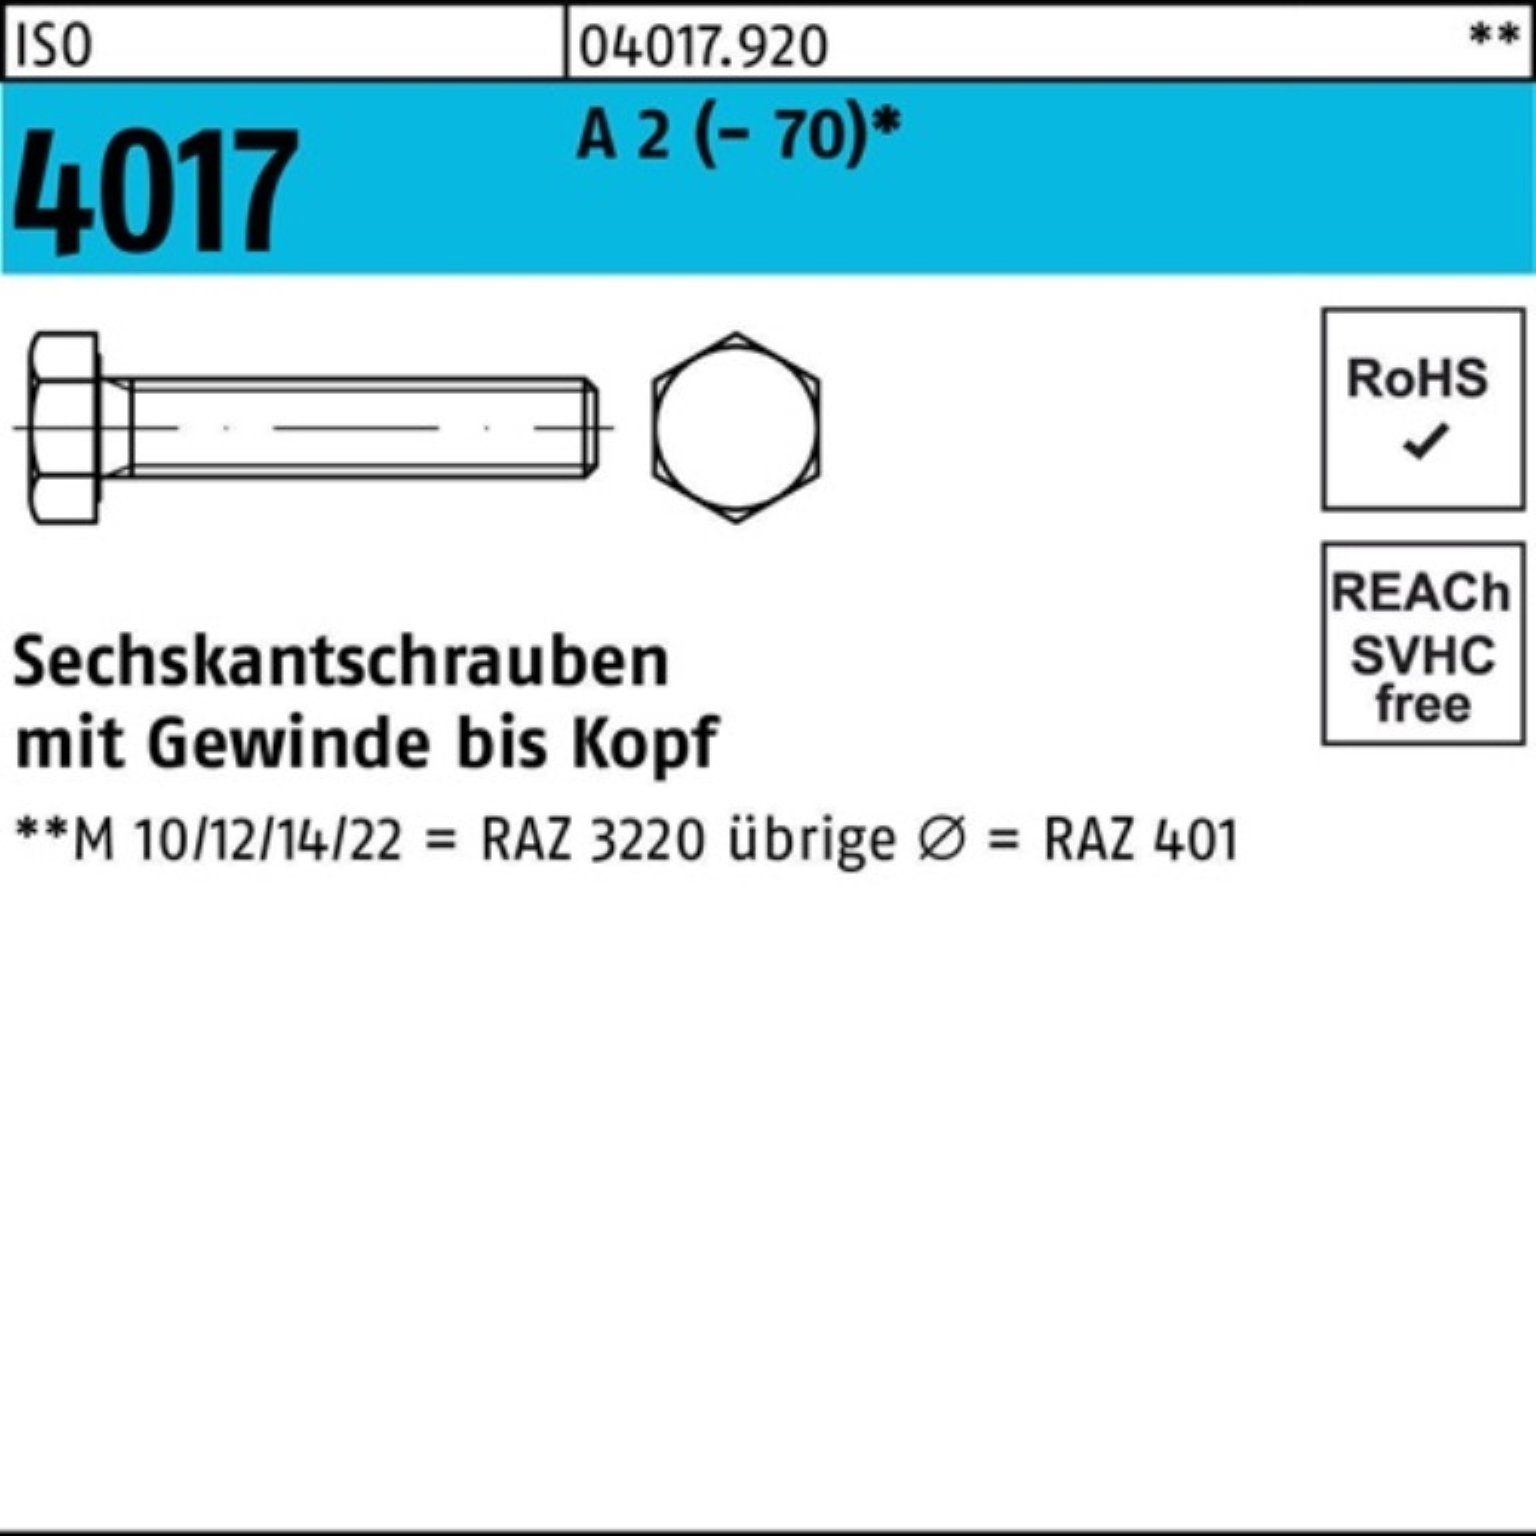 Bufab Sechskantschraube 100er Pack Sechskantschraube ISO 4017 VG M36x 130 A 2 (70) 1 Stück